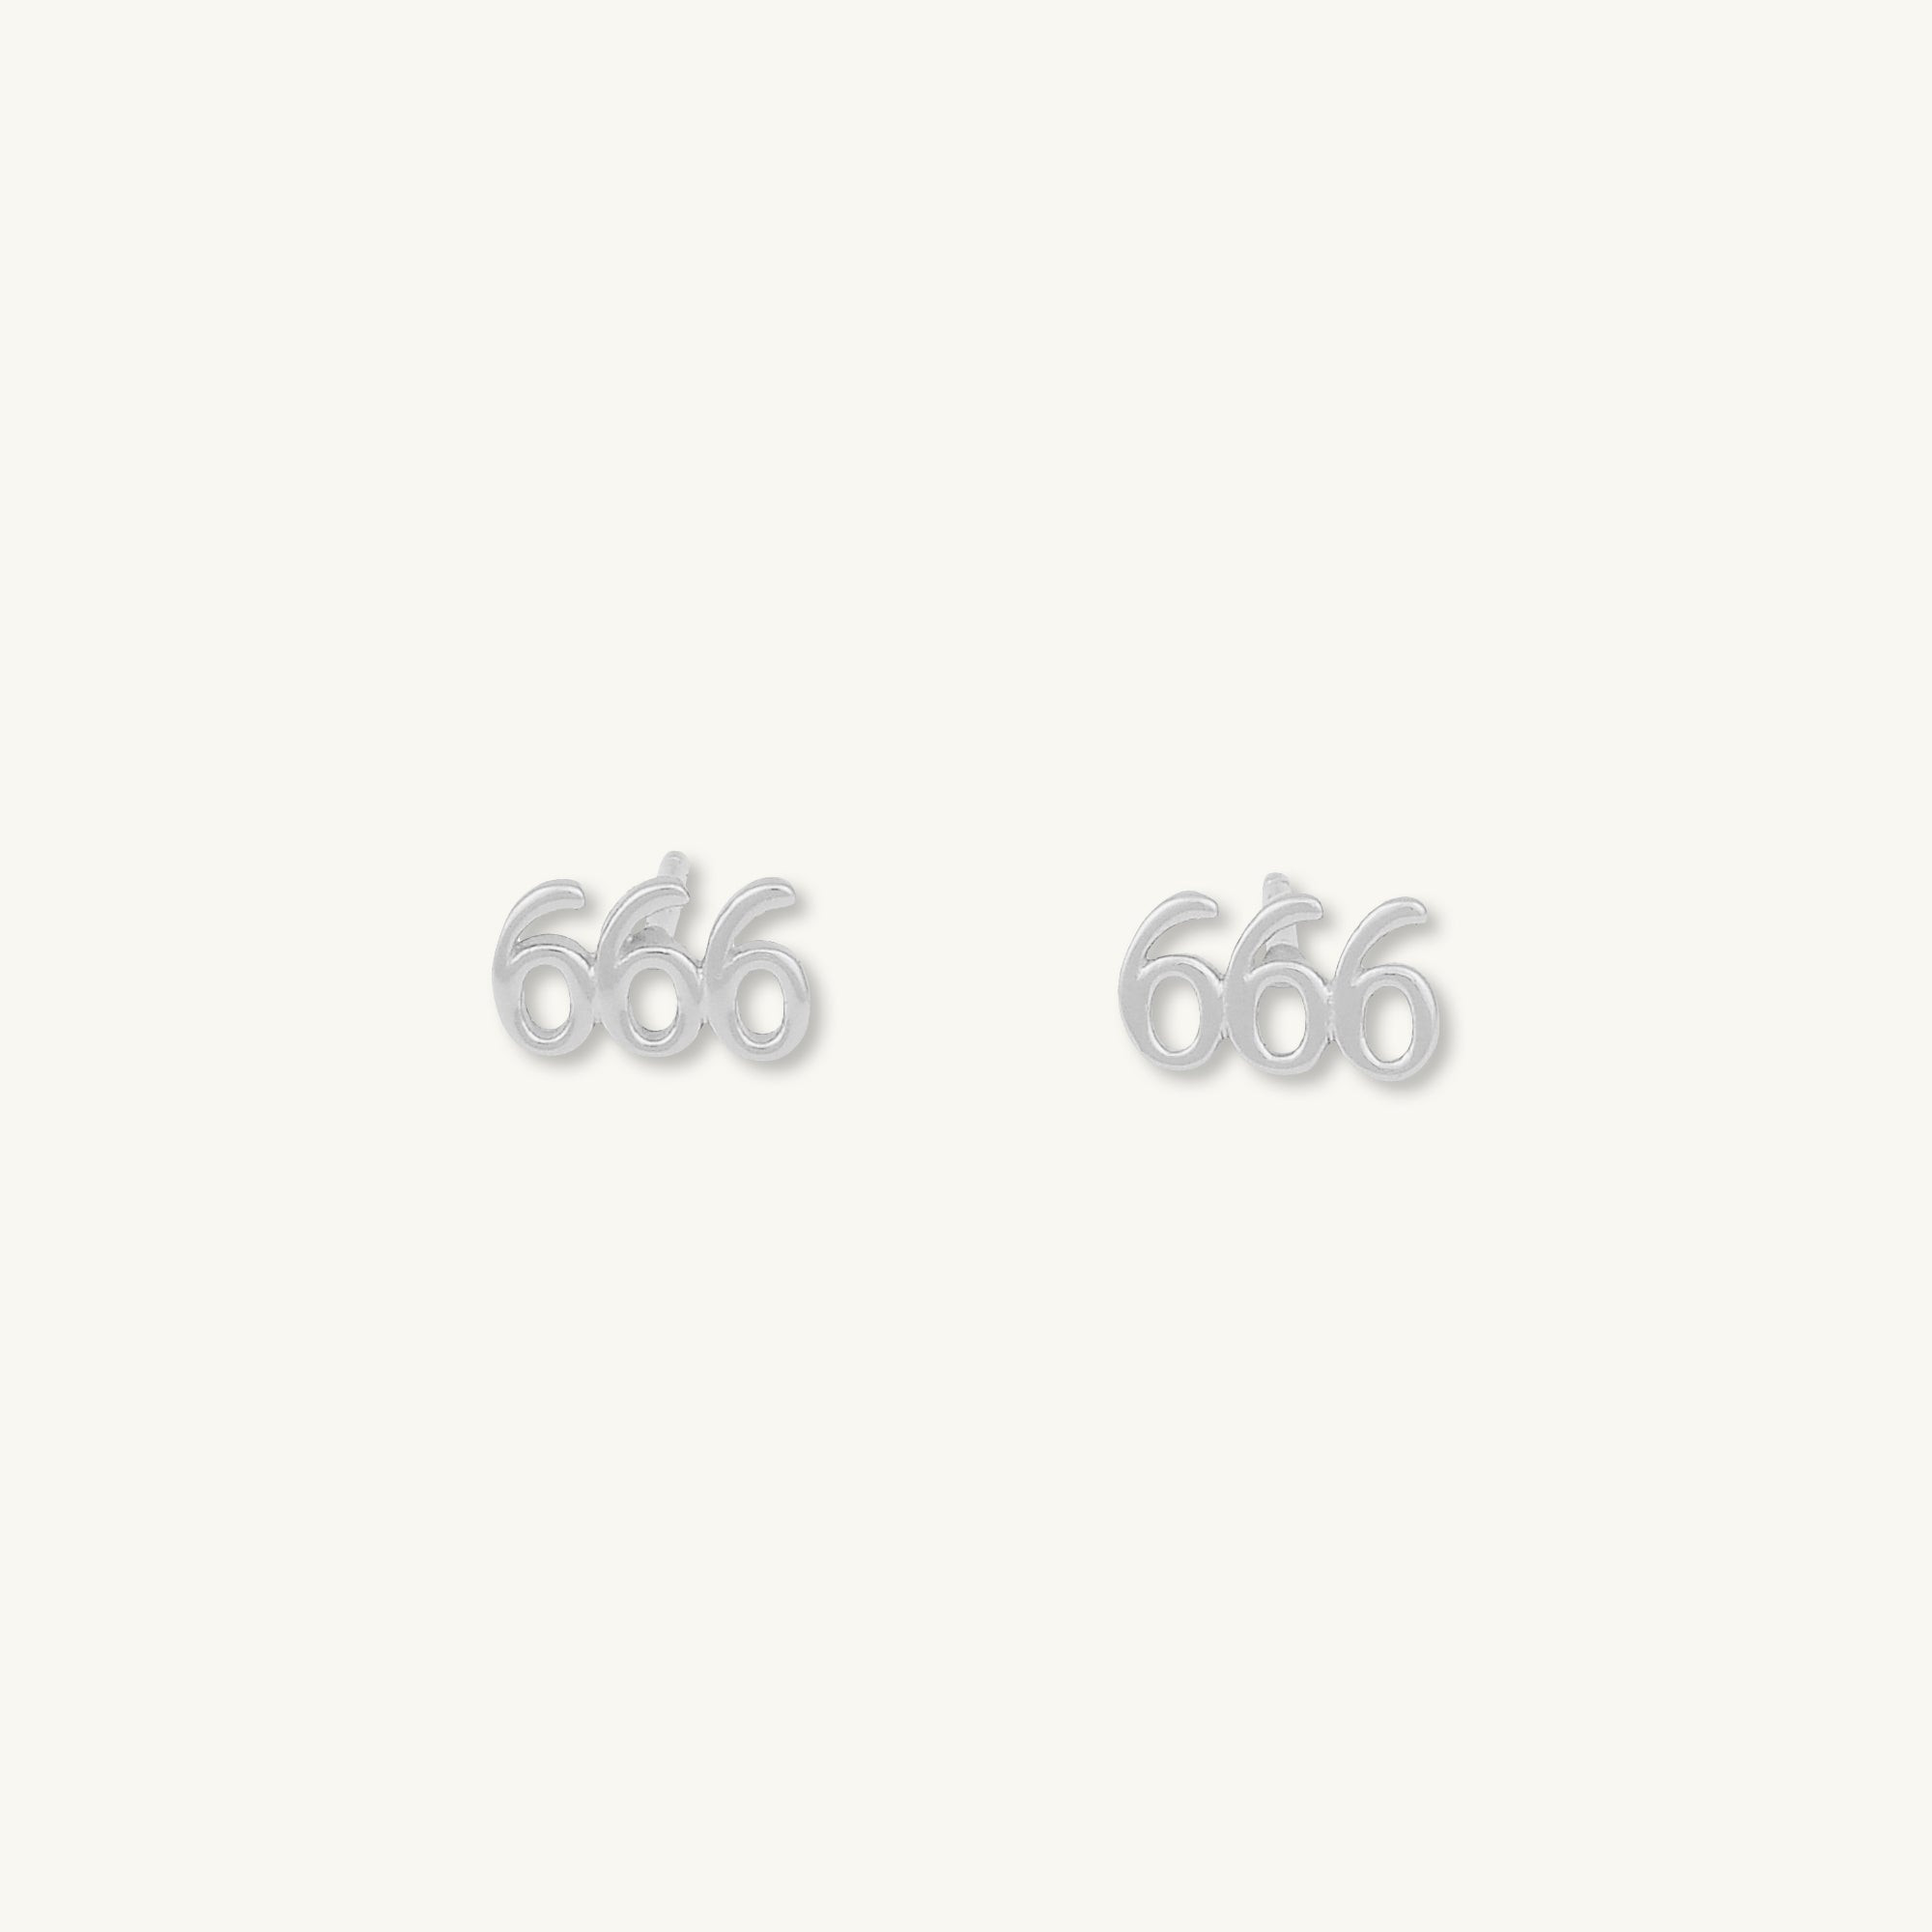 666 Angel Number Earrings